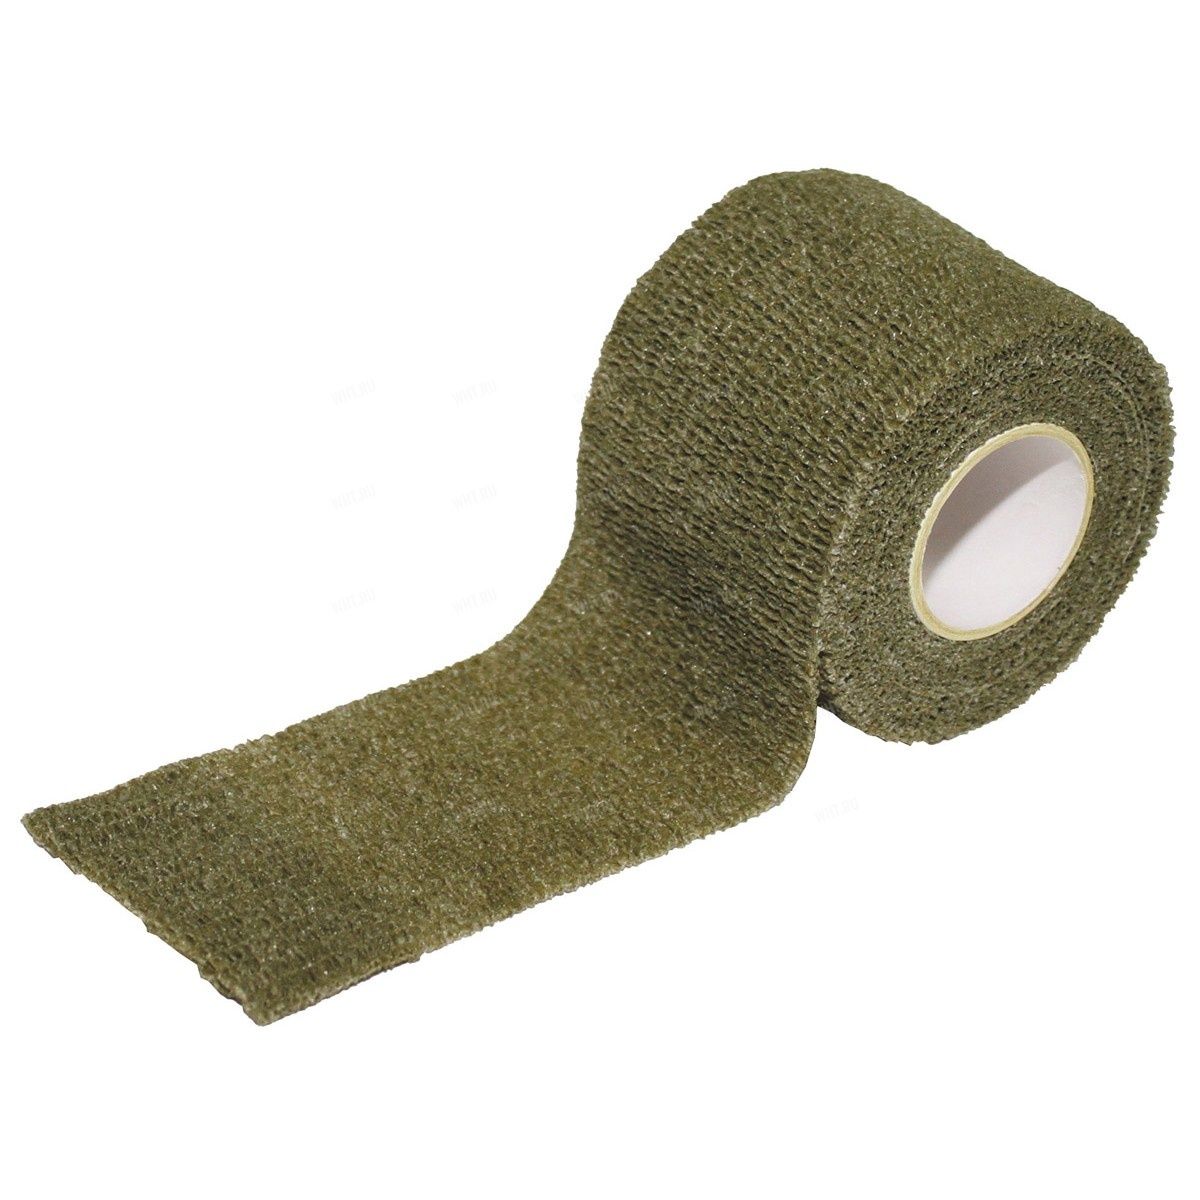 Лента текстильная MFH® на п/клейкой основе для маскировки оружия, 5 см х 4,5 м - Olive купить в интернет-магазине wht.ru